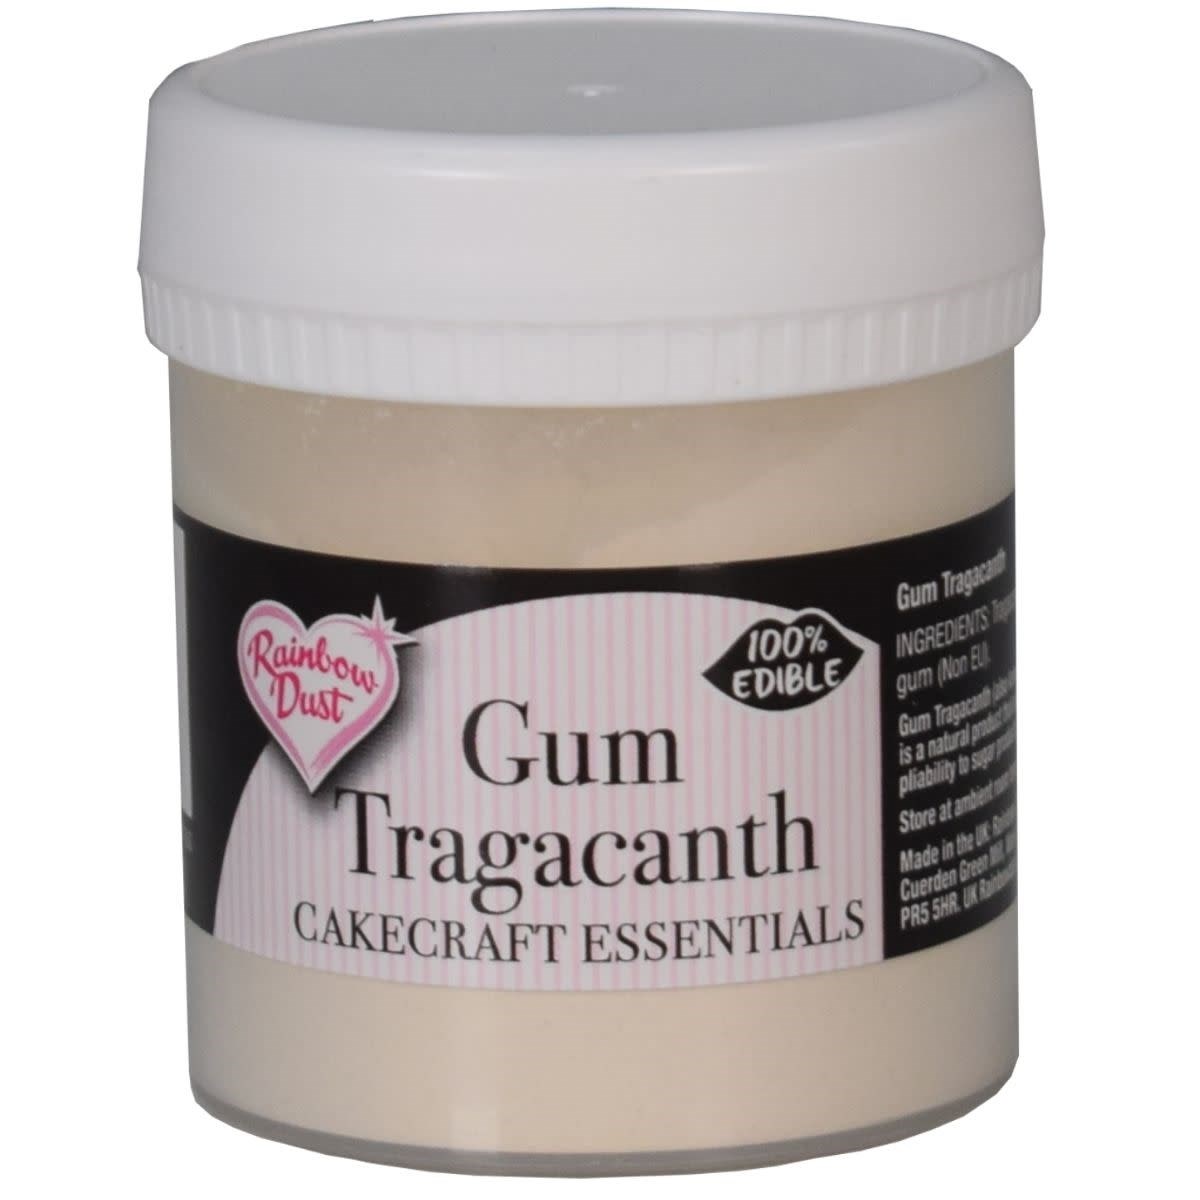 Gum Tragacanth - an overview